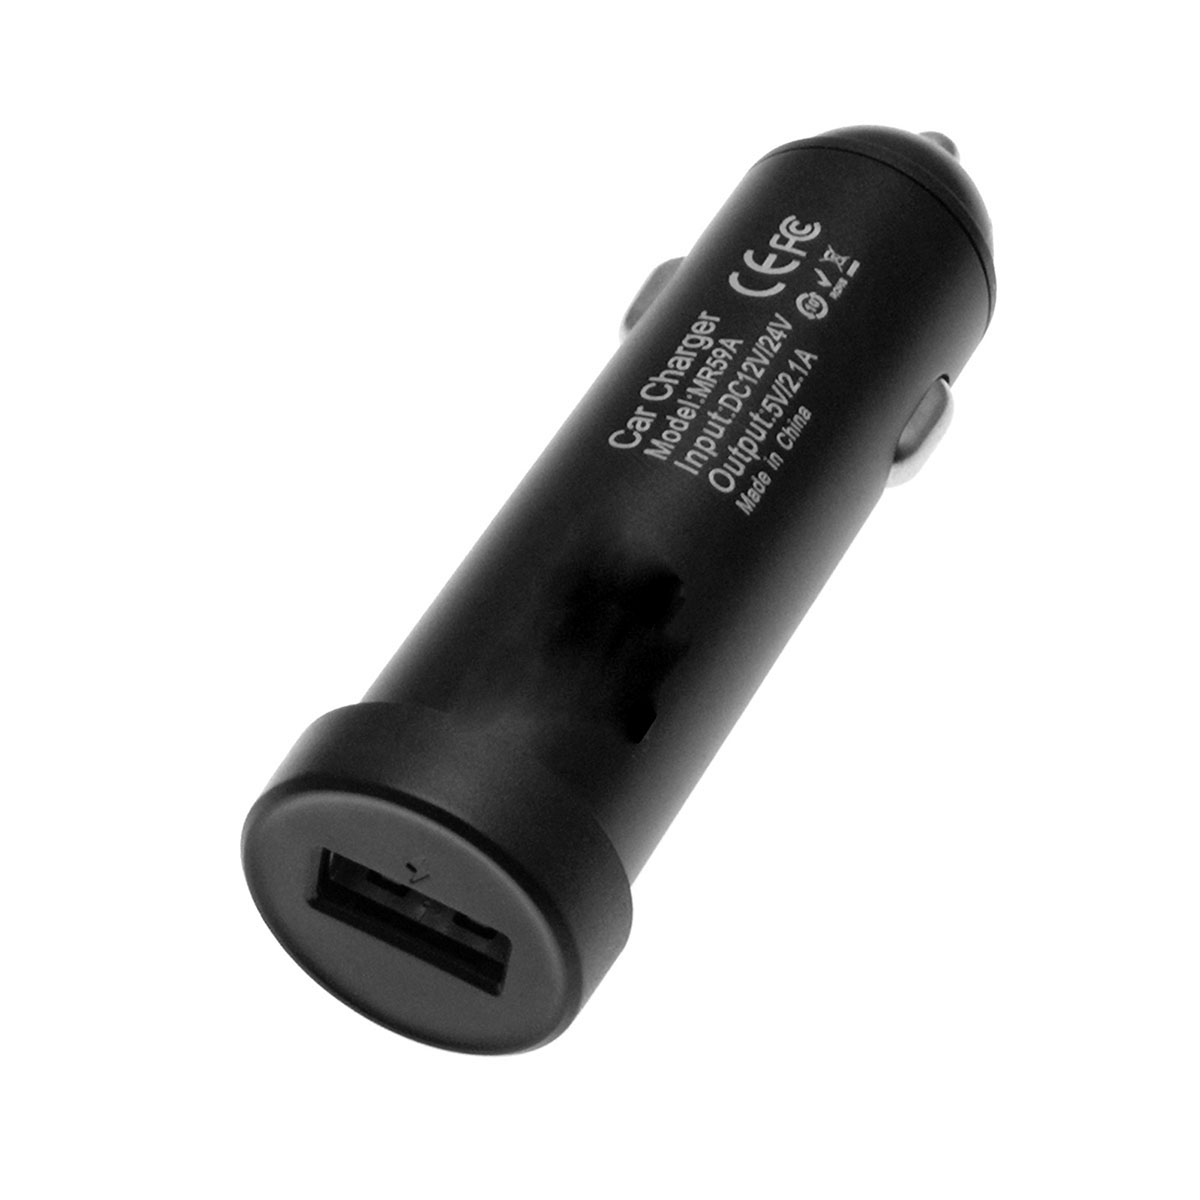 АЗУ (Автомобильное зарядное устройство) CARLIVE MR59A, 1 USB, 2.1A, цвет черный